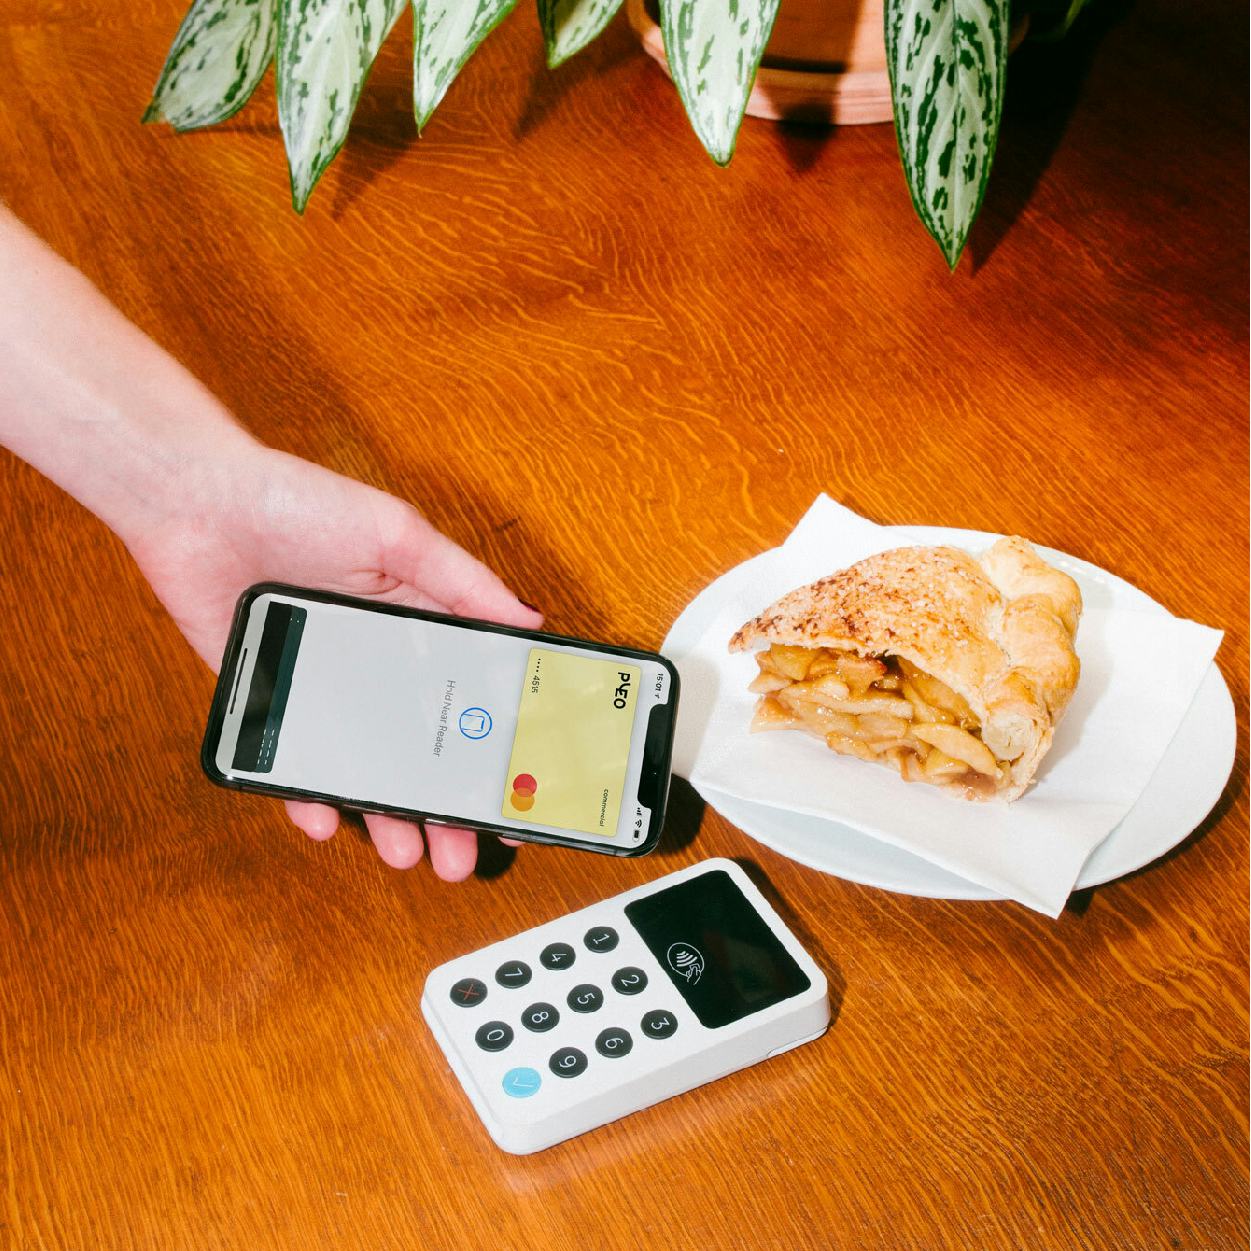 Die virtuelle Firmenkreditkarte von Pleo wird zum Bezahlen des Mittagessens verwendet